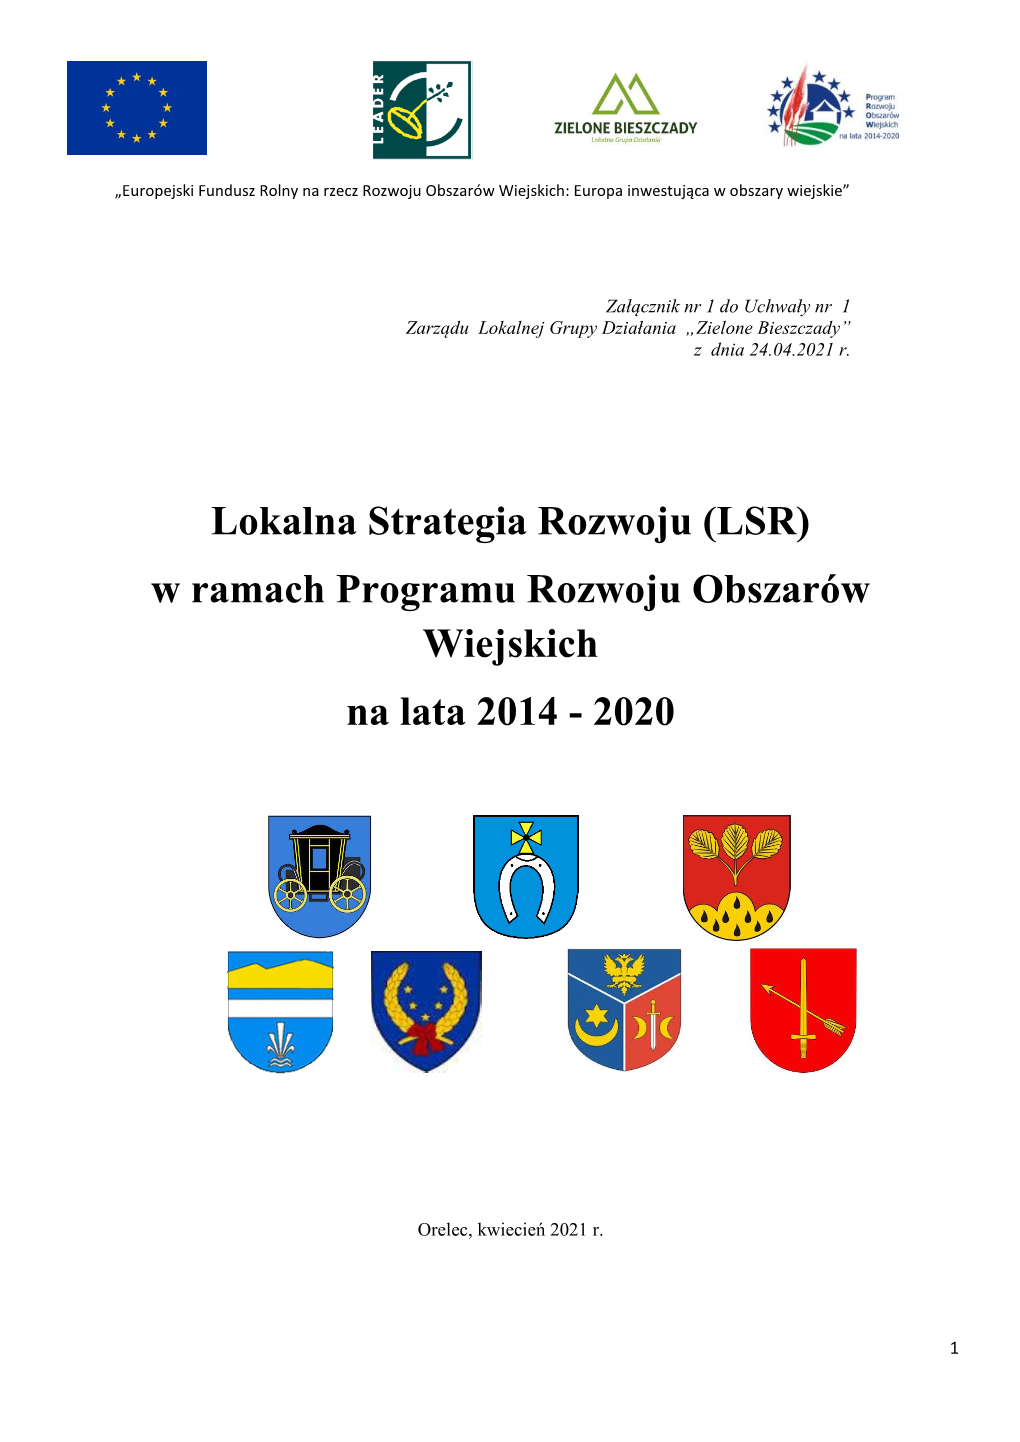 (LSR) W Ramach Programu Rozwoju Obszarów Wiejskich Na Lata 2014 - 2020